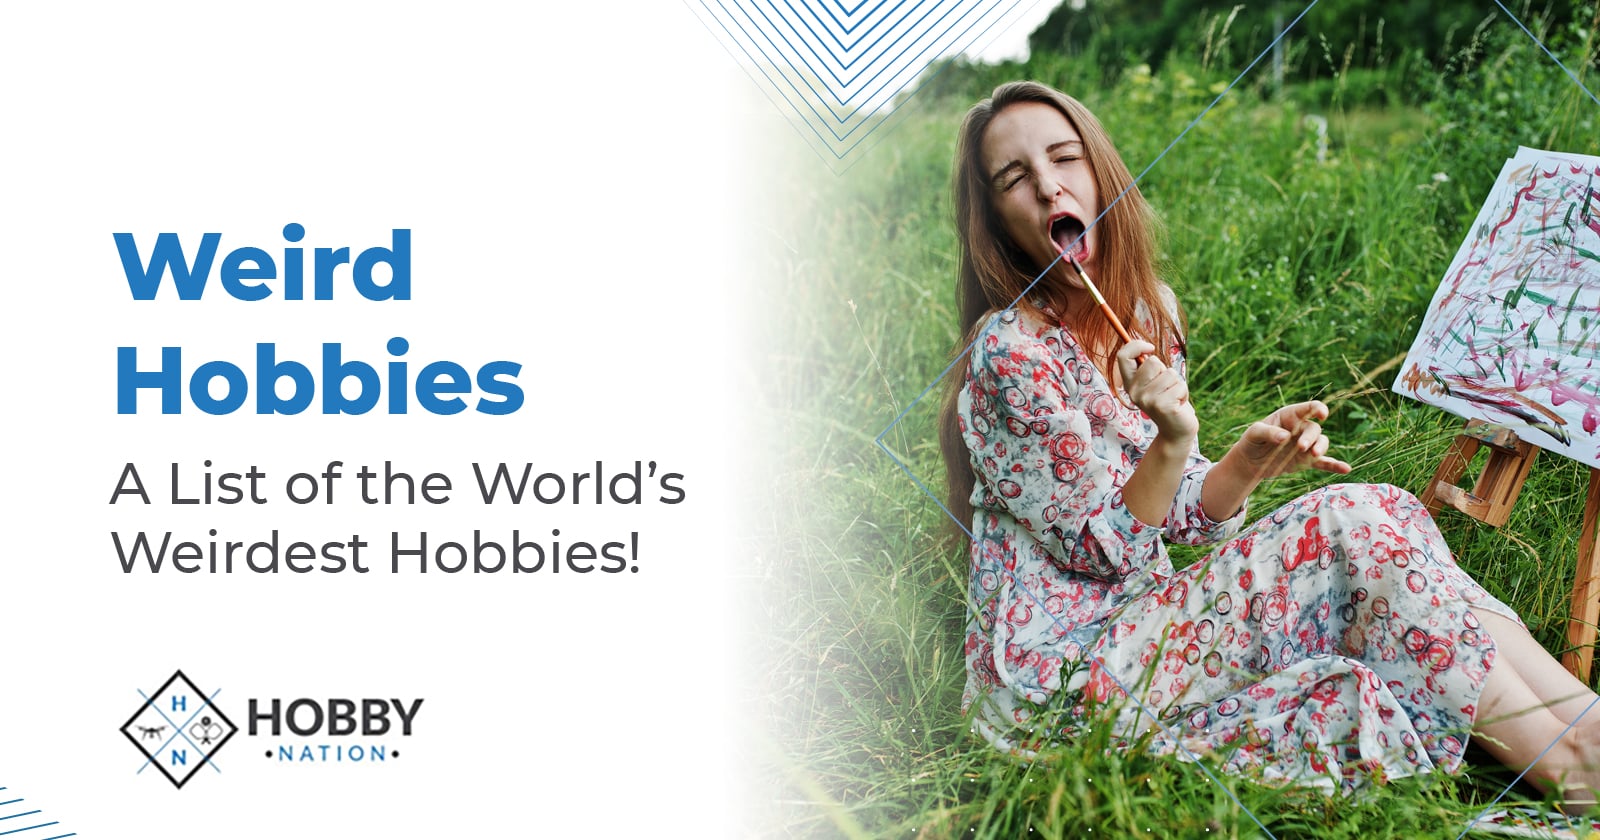 Weird Hobbies – A List of the World’s Weirdest Hobbies!